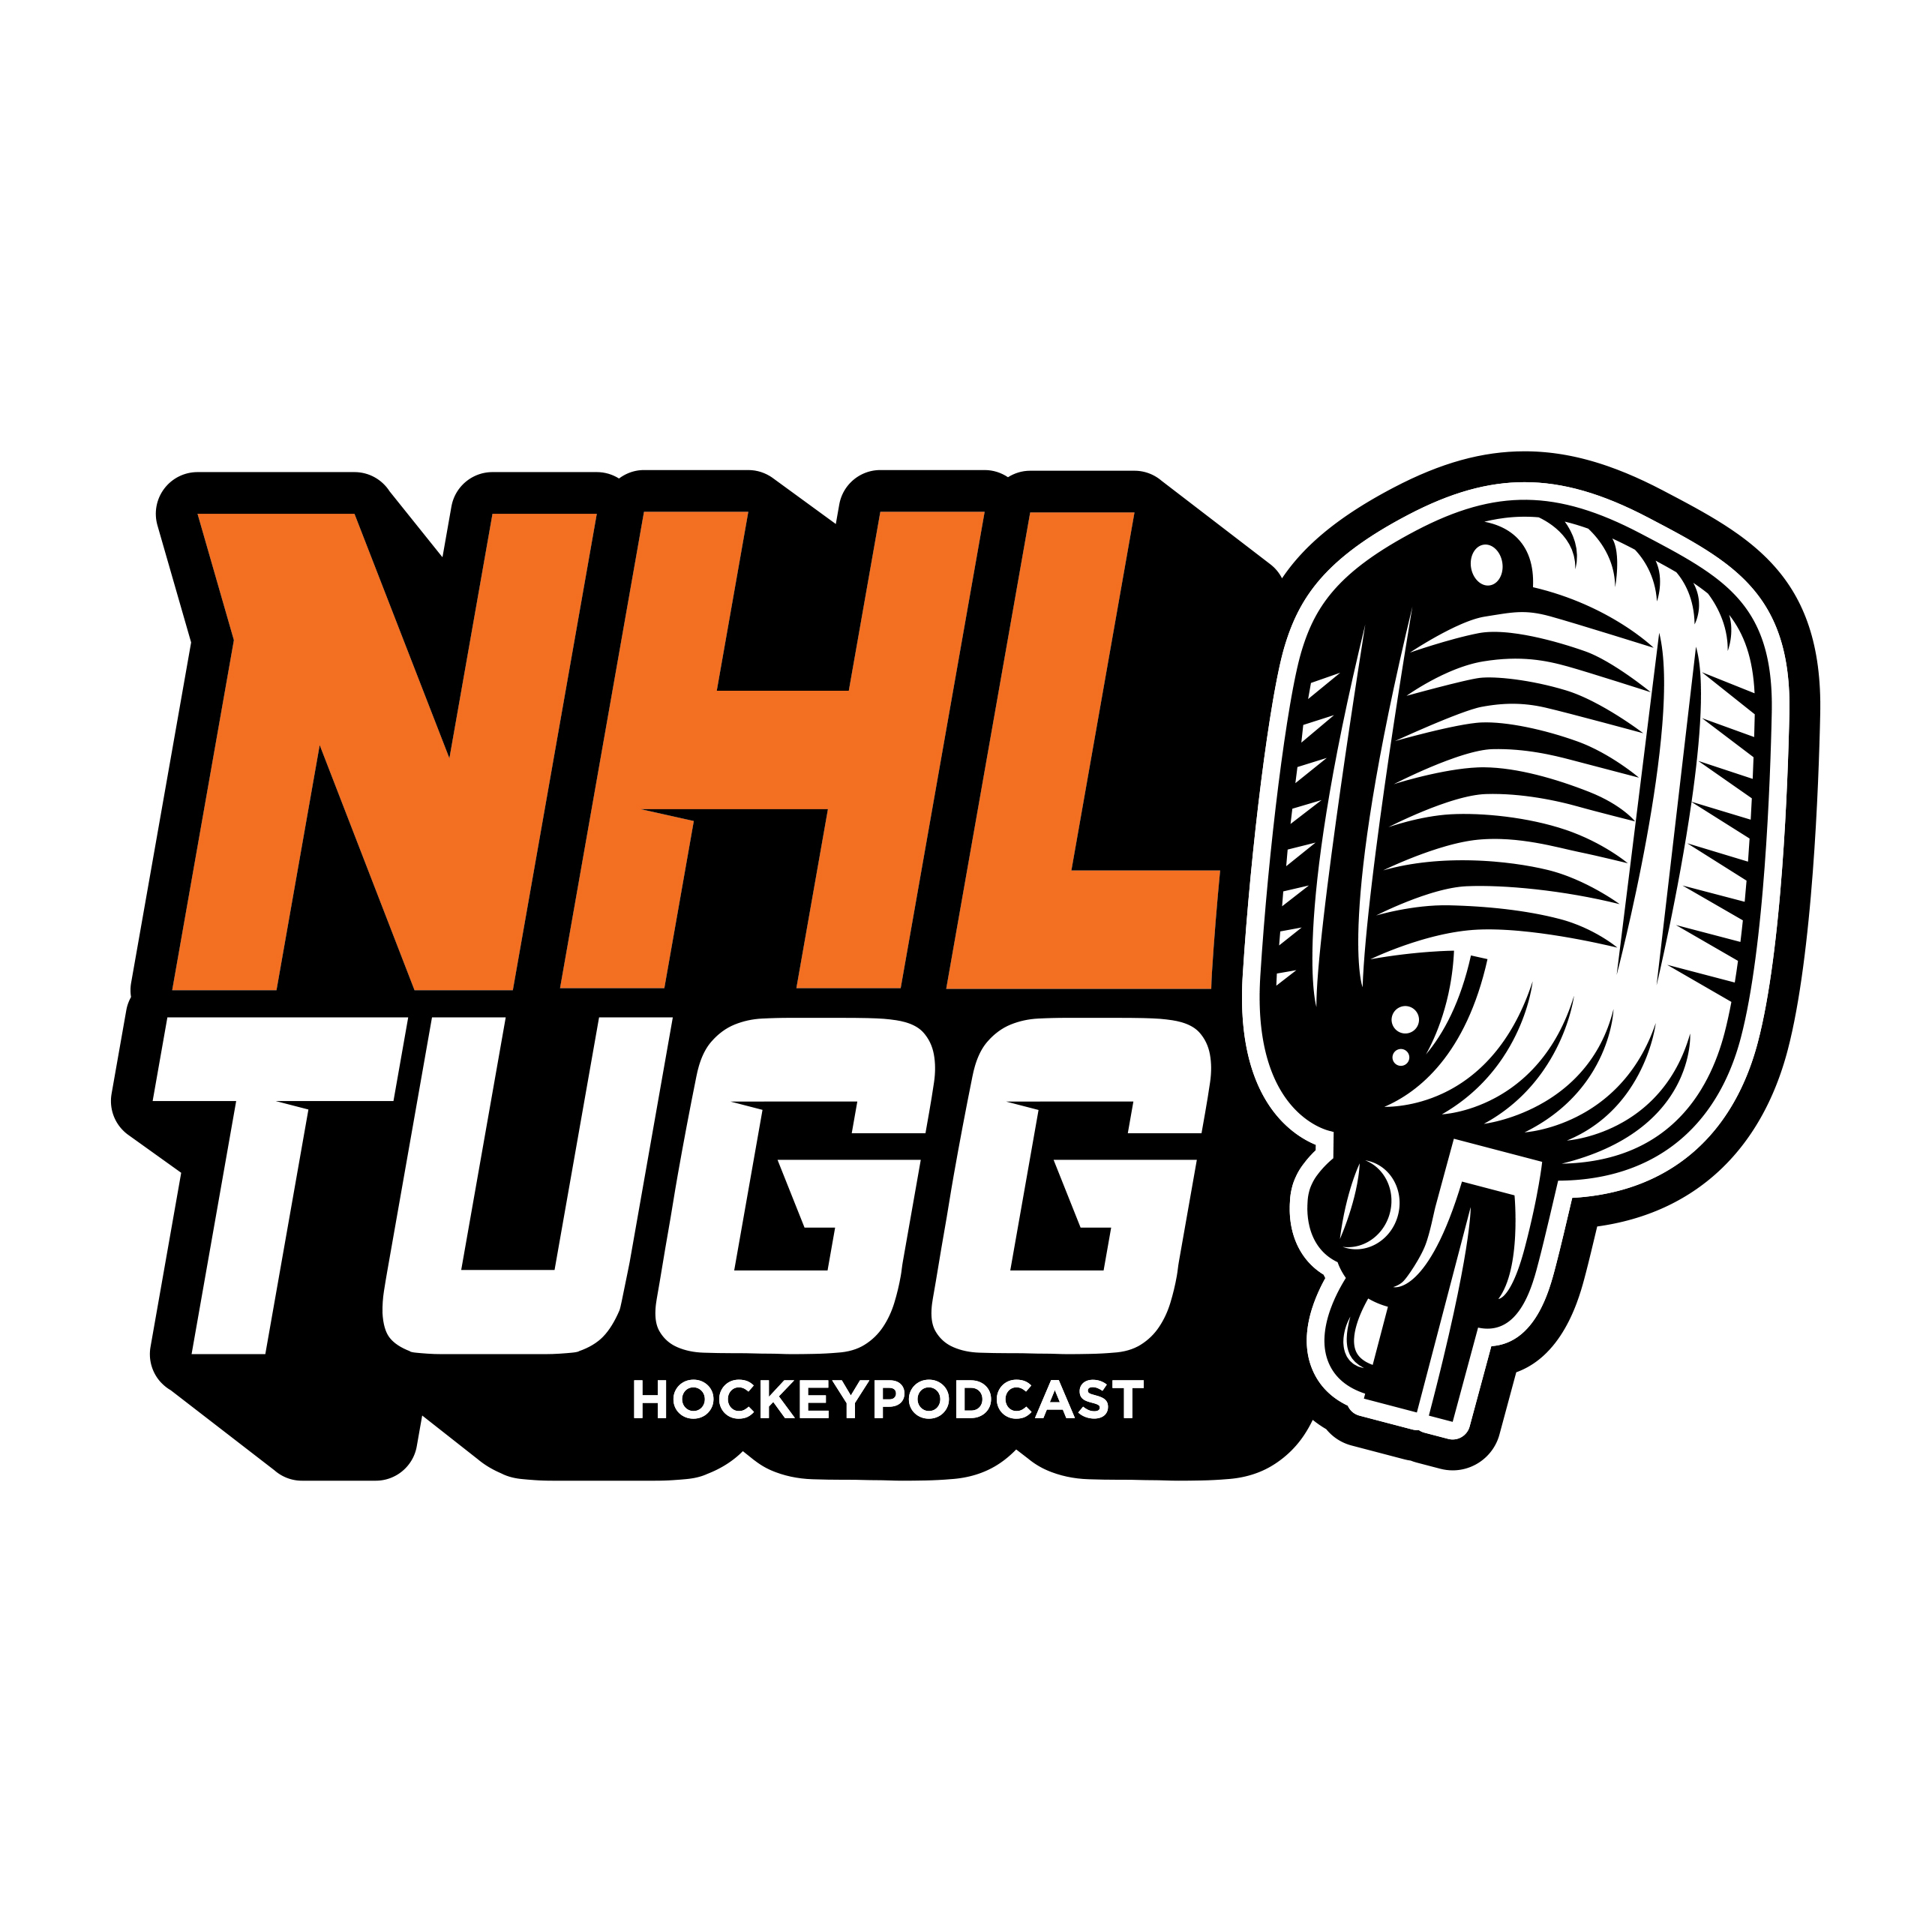 NHL-Tugg avsnitt 101 ”Tuffaste cupen att förlora”